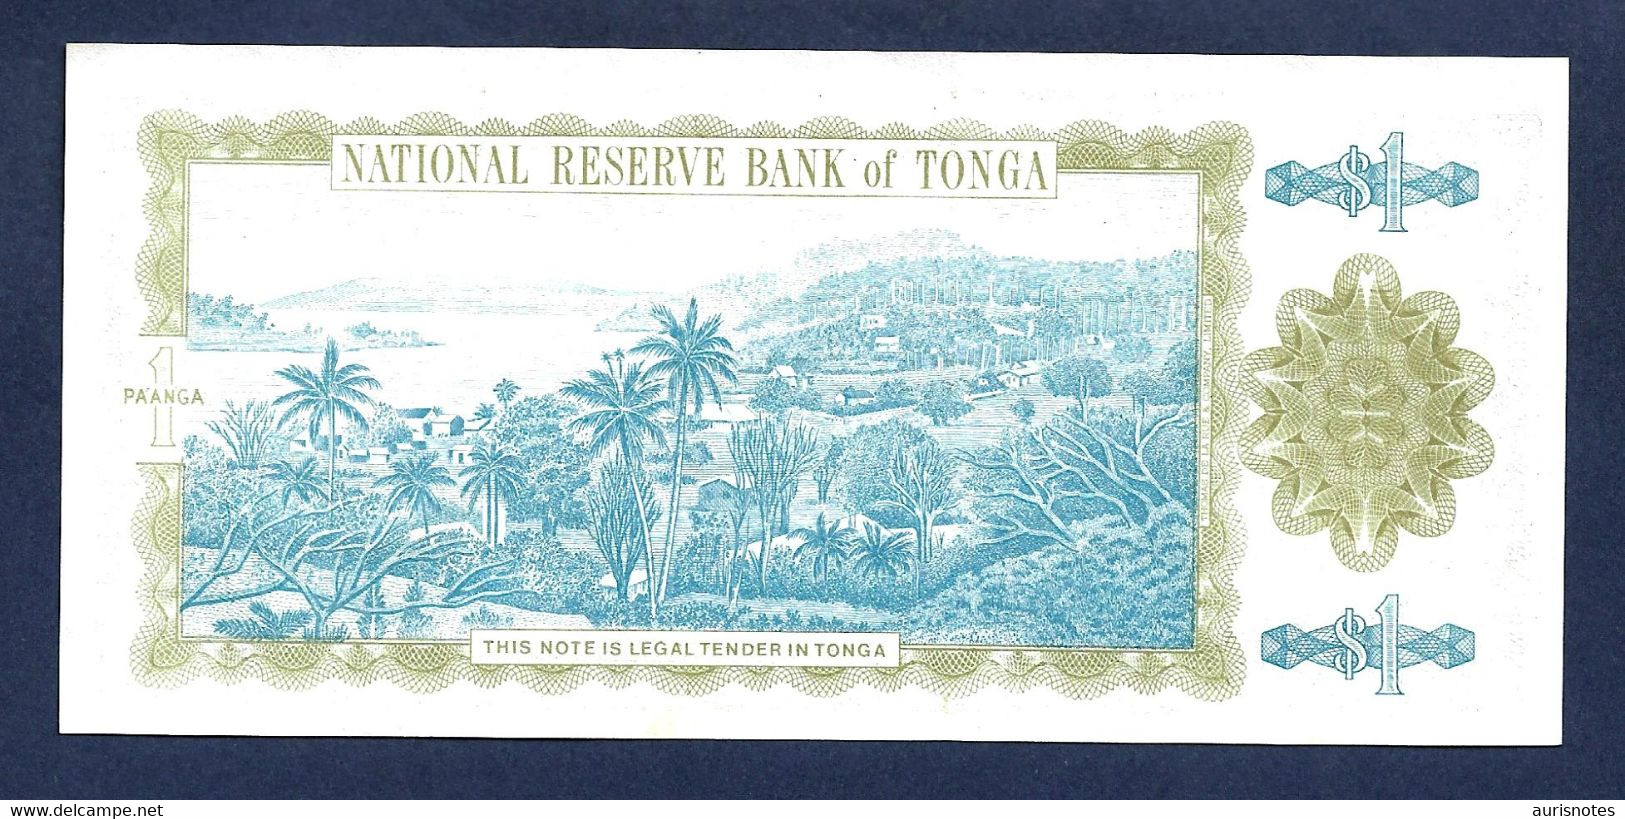 Tonga 1 Pa'anga 1992 P25 Very Low Number UNC - Tonga